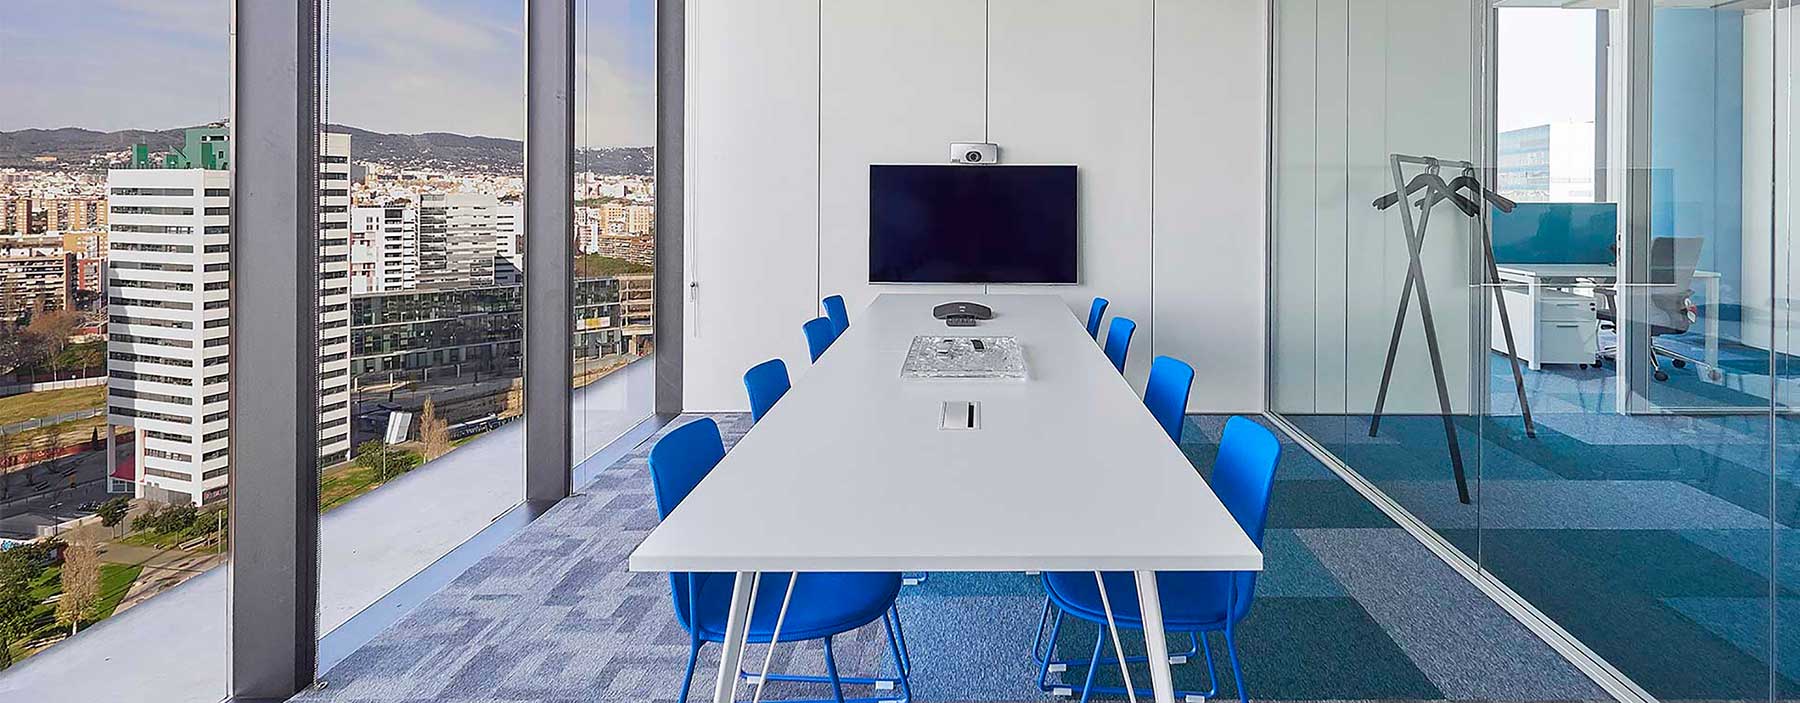 Sala de reuniones en oficinas en Barcelona con muebles de Limobel Inwo